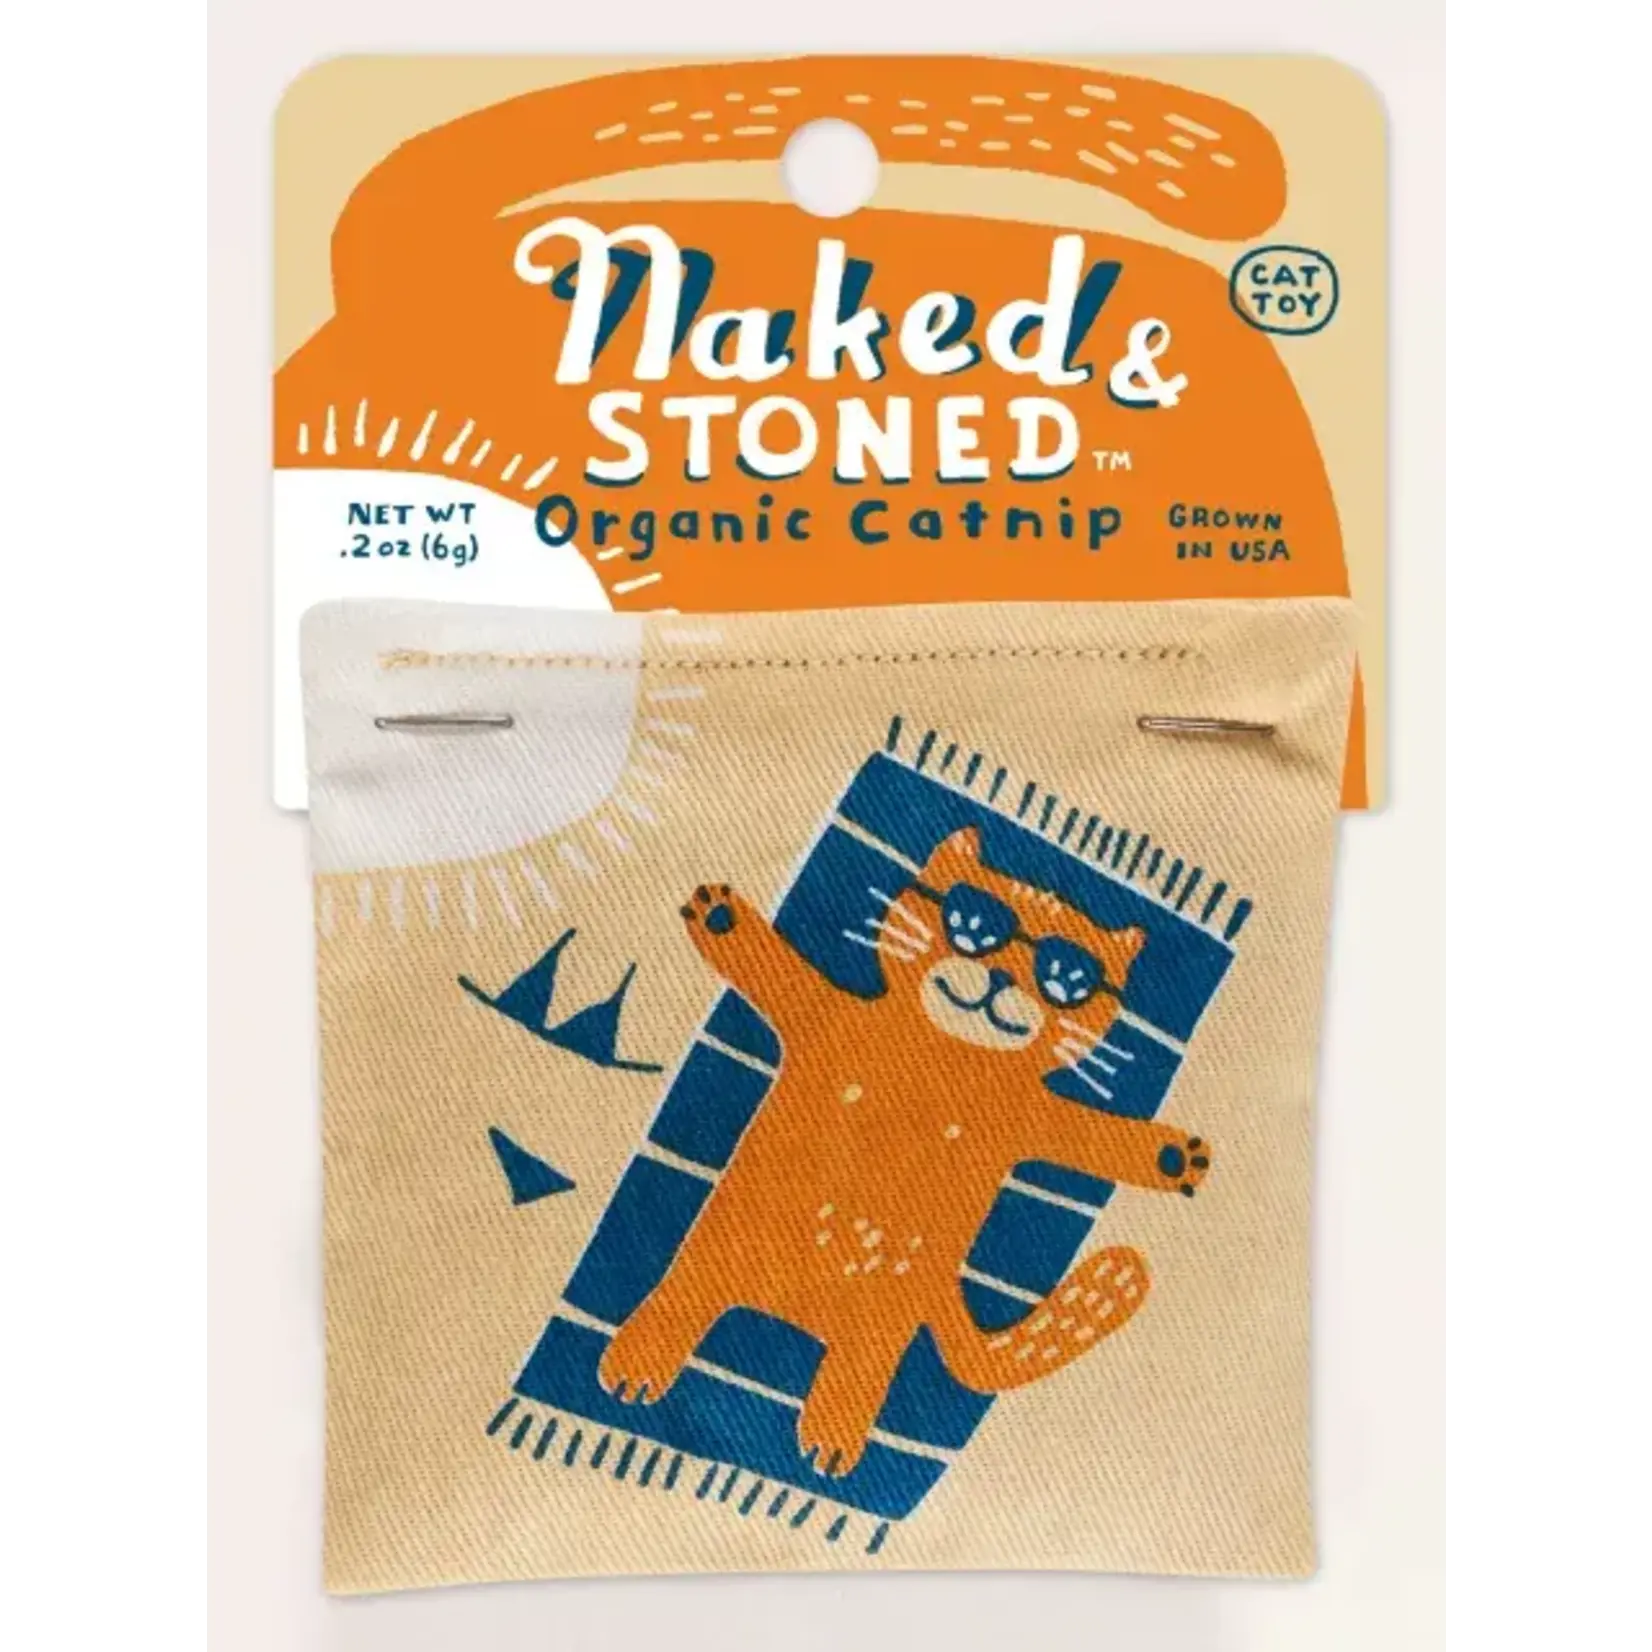 BlueQ Catnip Toy: Naked and Stoned